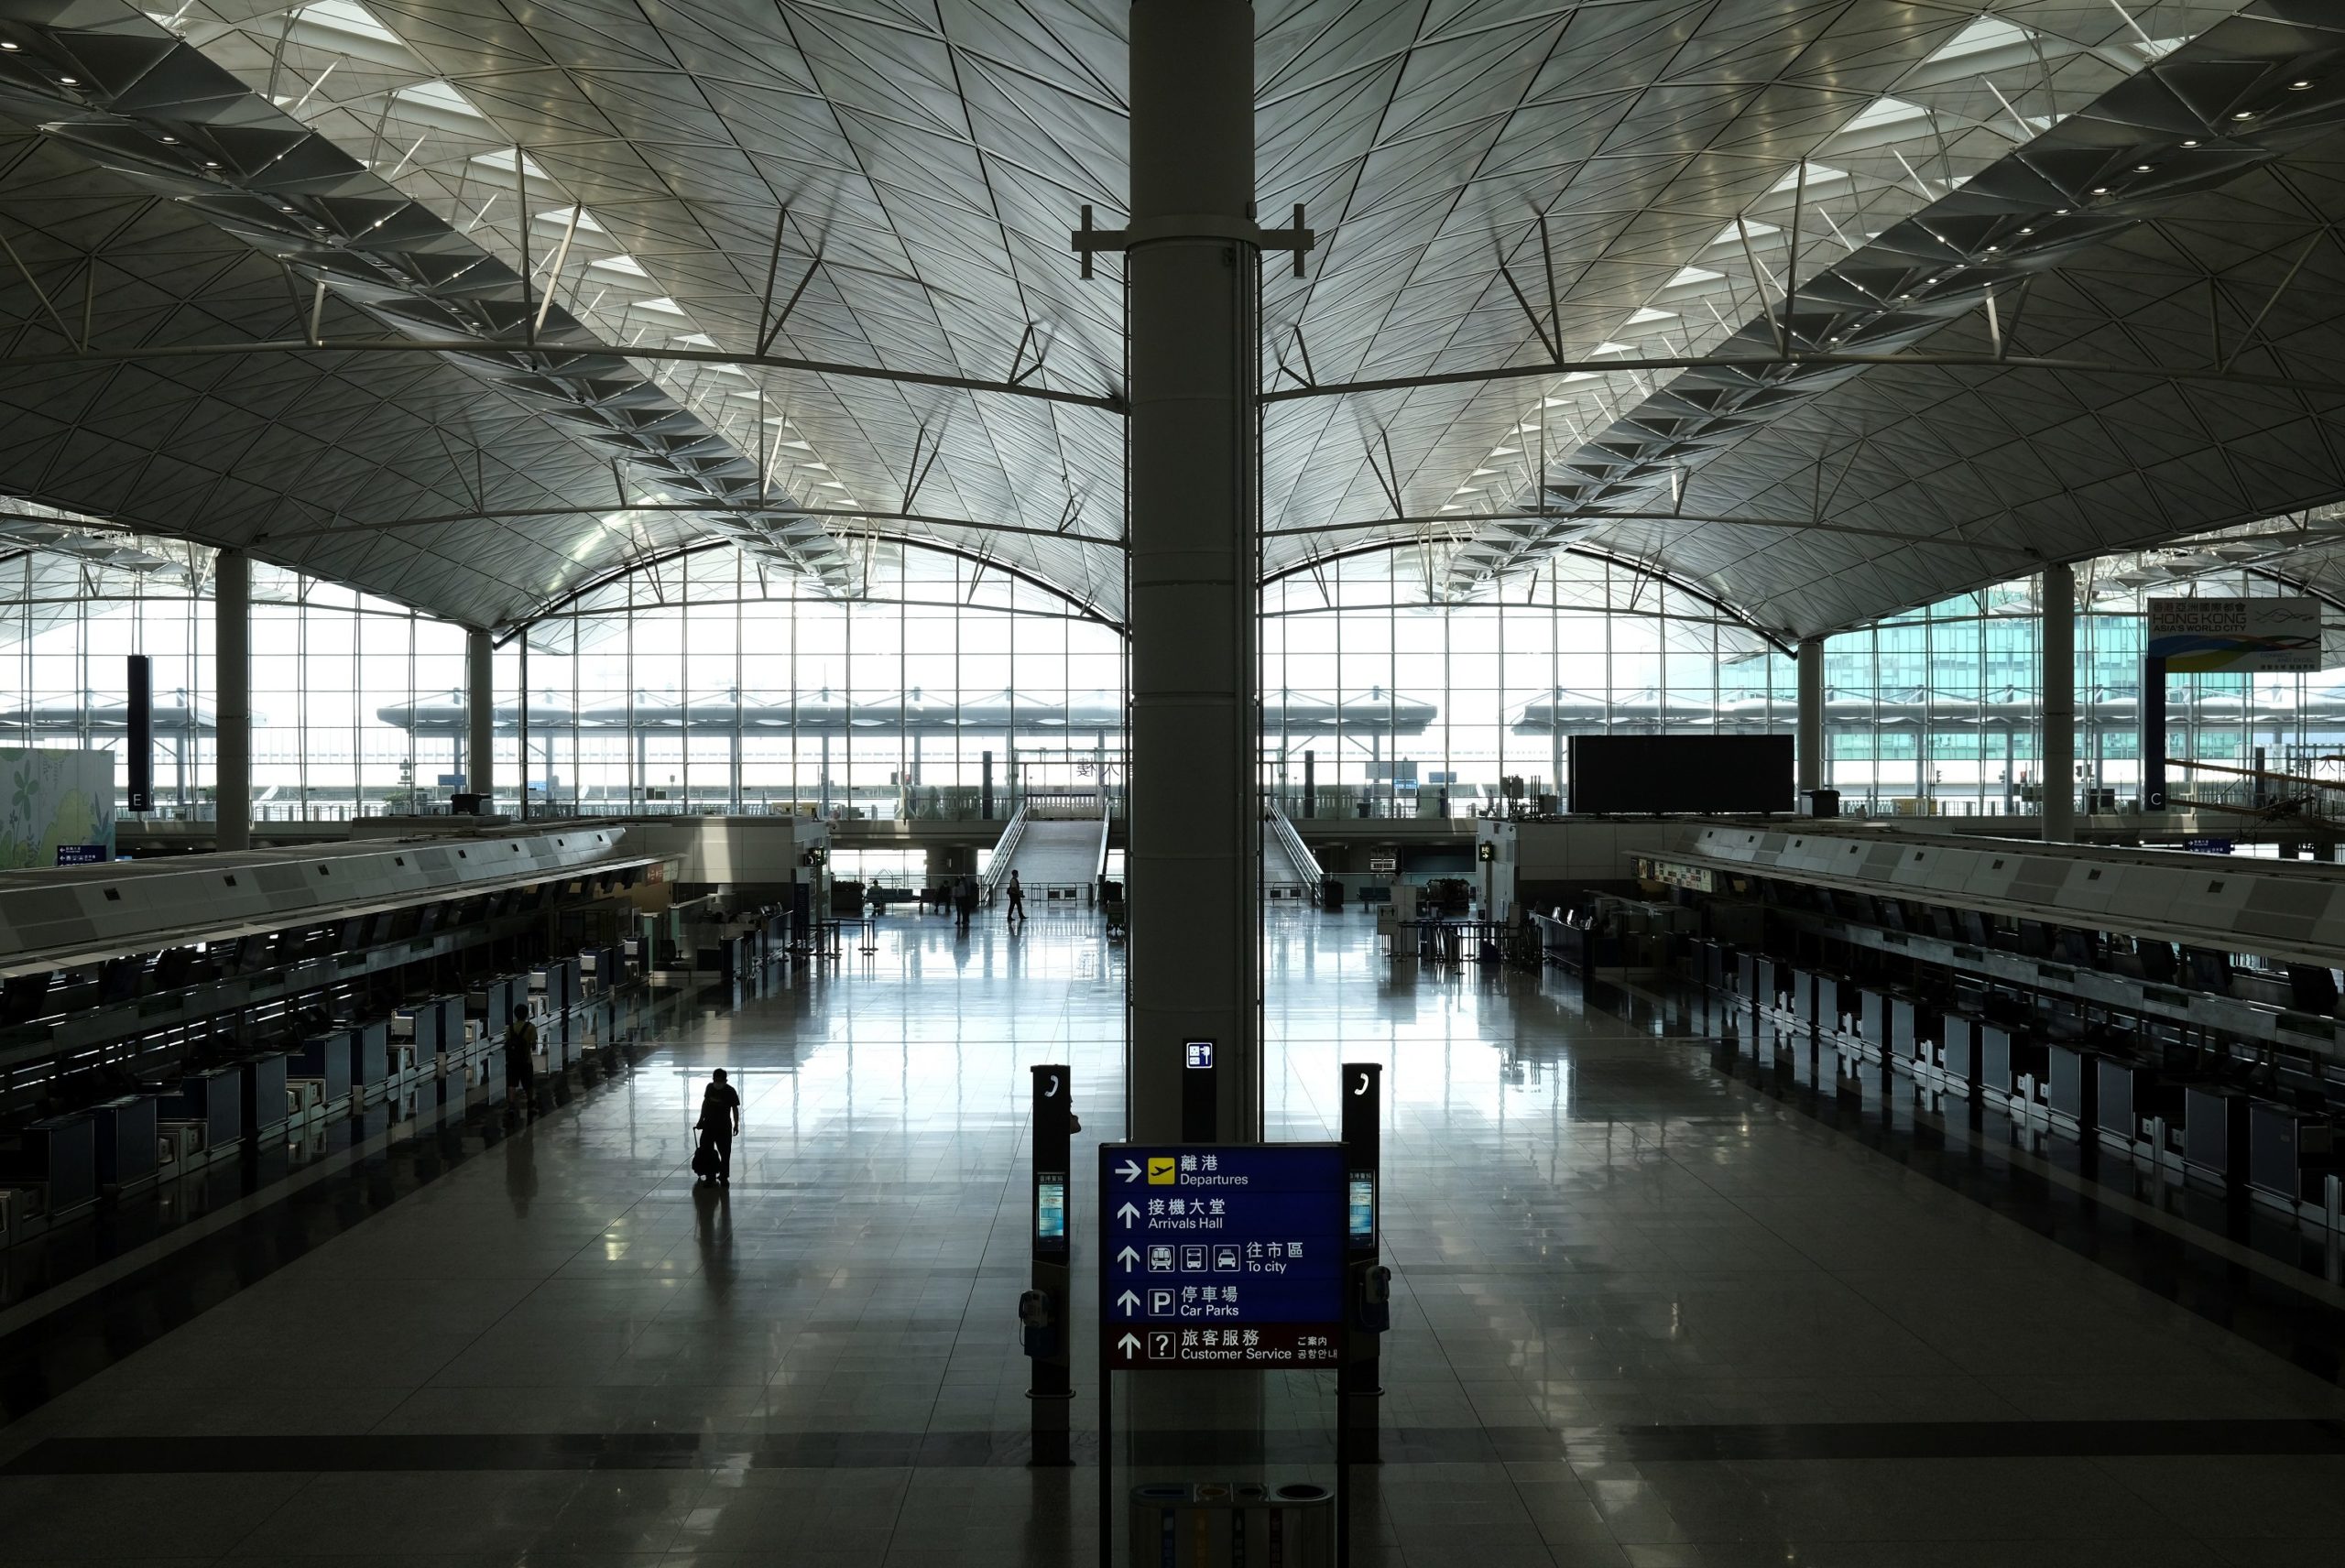 ฮ่องกงเตรียมเปิดสนามบินบางส่วนสัปดาห์หน้า เริ่มจากให้แวะเปลี่ยนเครื่อง แต่ห้ามออกนอกสนามบิน